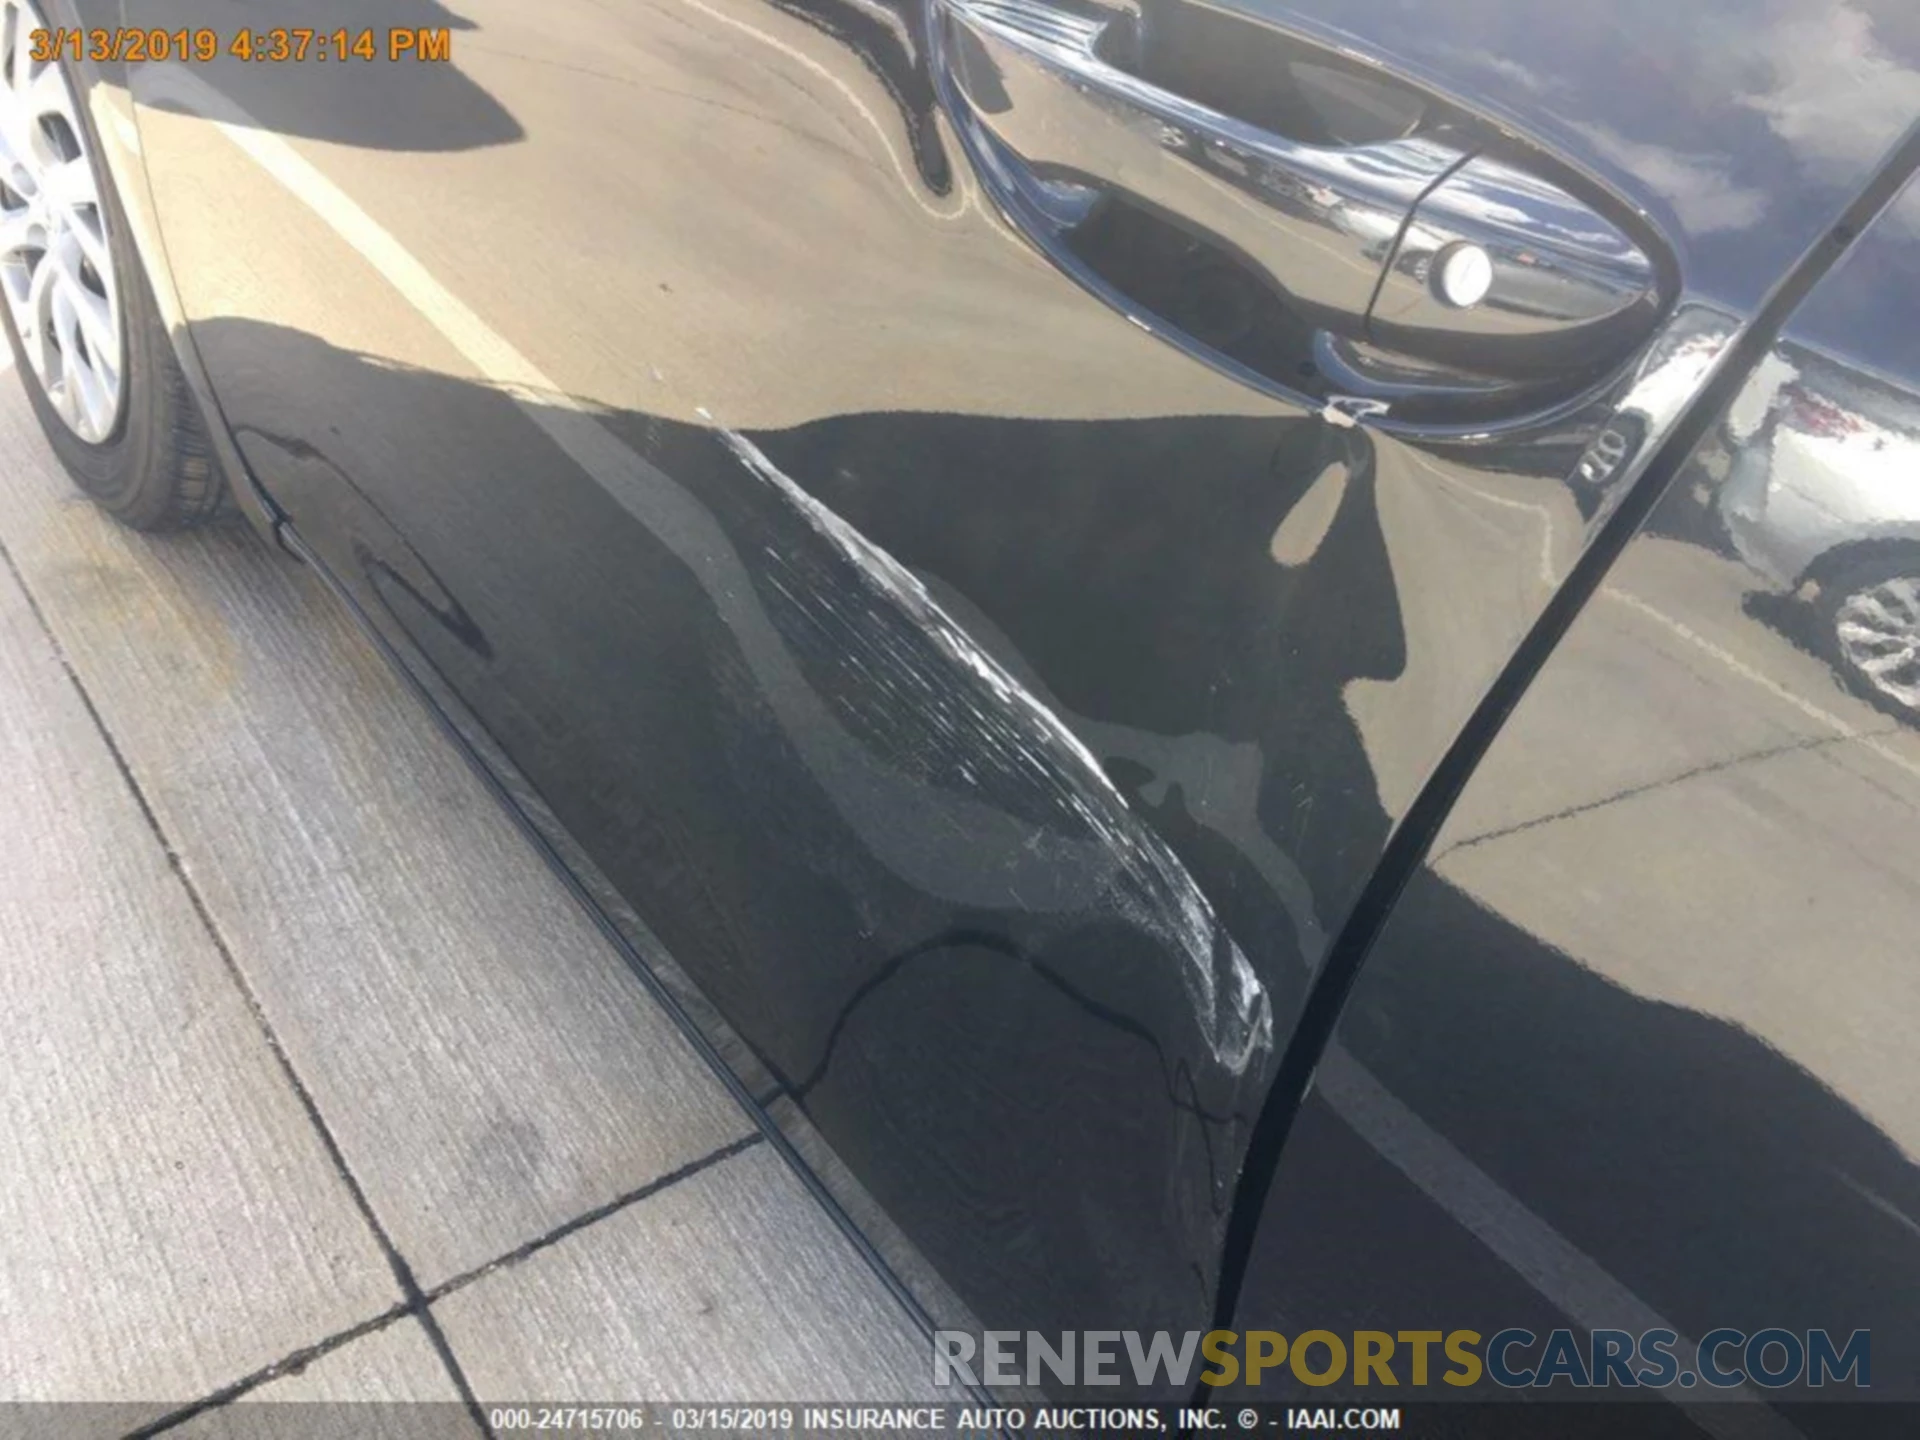 13 Photograph of a damaged car 5YFBURHE7KP892208 TOYOTA COROLLA 2019